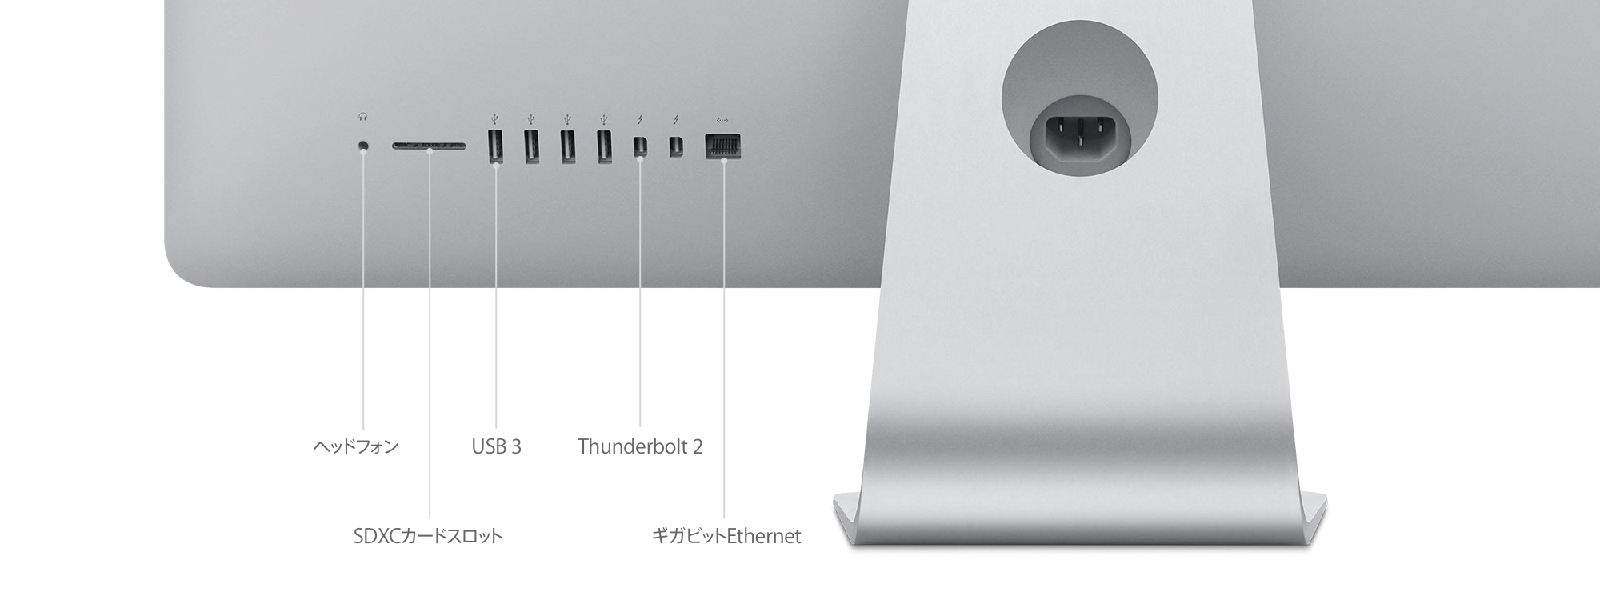 26550円 生まれのブランドで iMac Retina 4K 21.5インチ Late 2015